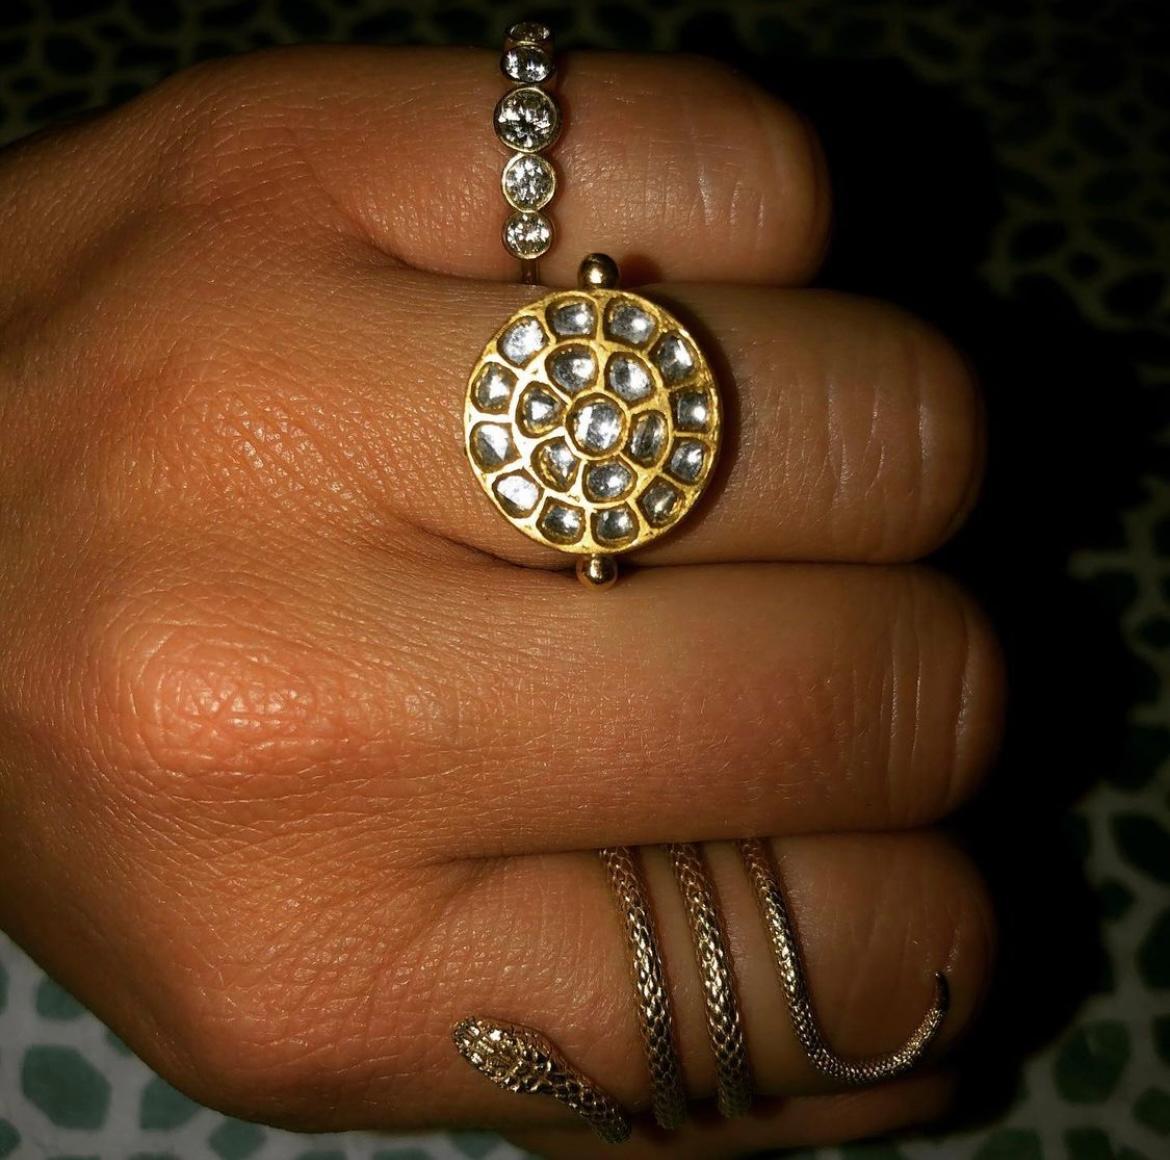 OUROBOROS 'Sun', Diamant-Kundan, gefasst in 24-karätigem Gold und auf einem 18-karätigem Goldring.

Dieser Ring ist in verschiedenen Größen erhältlich und wird auf Wunsch mit einem passenden Ohrring-Set geliefert. Bitte kontaktieren Sie OUROBOROS